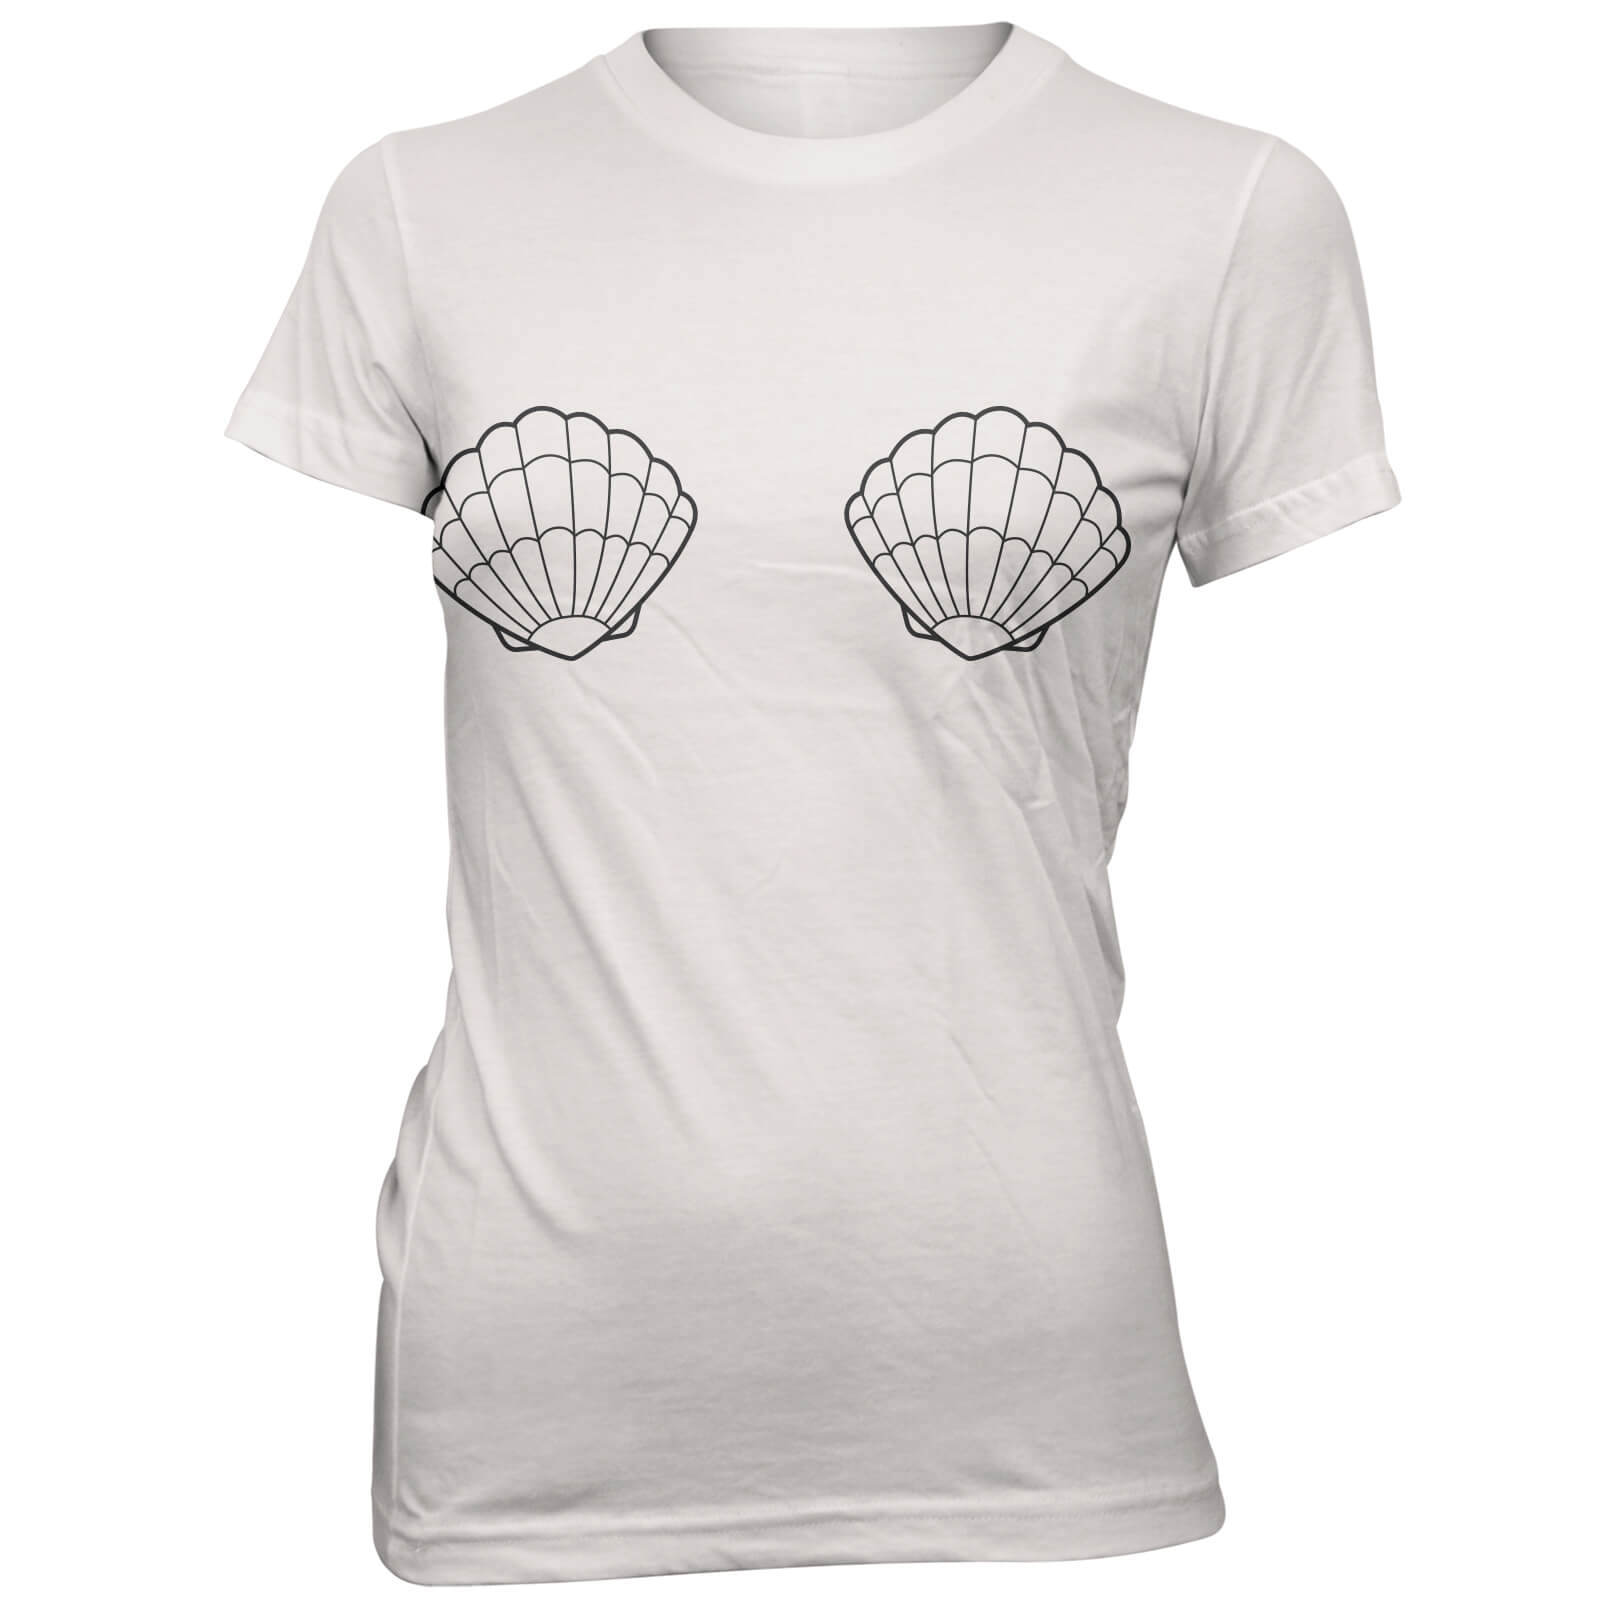 Small Shells Women's White T-Shirt - L - White